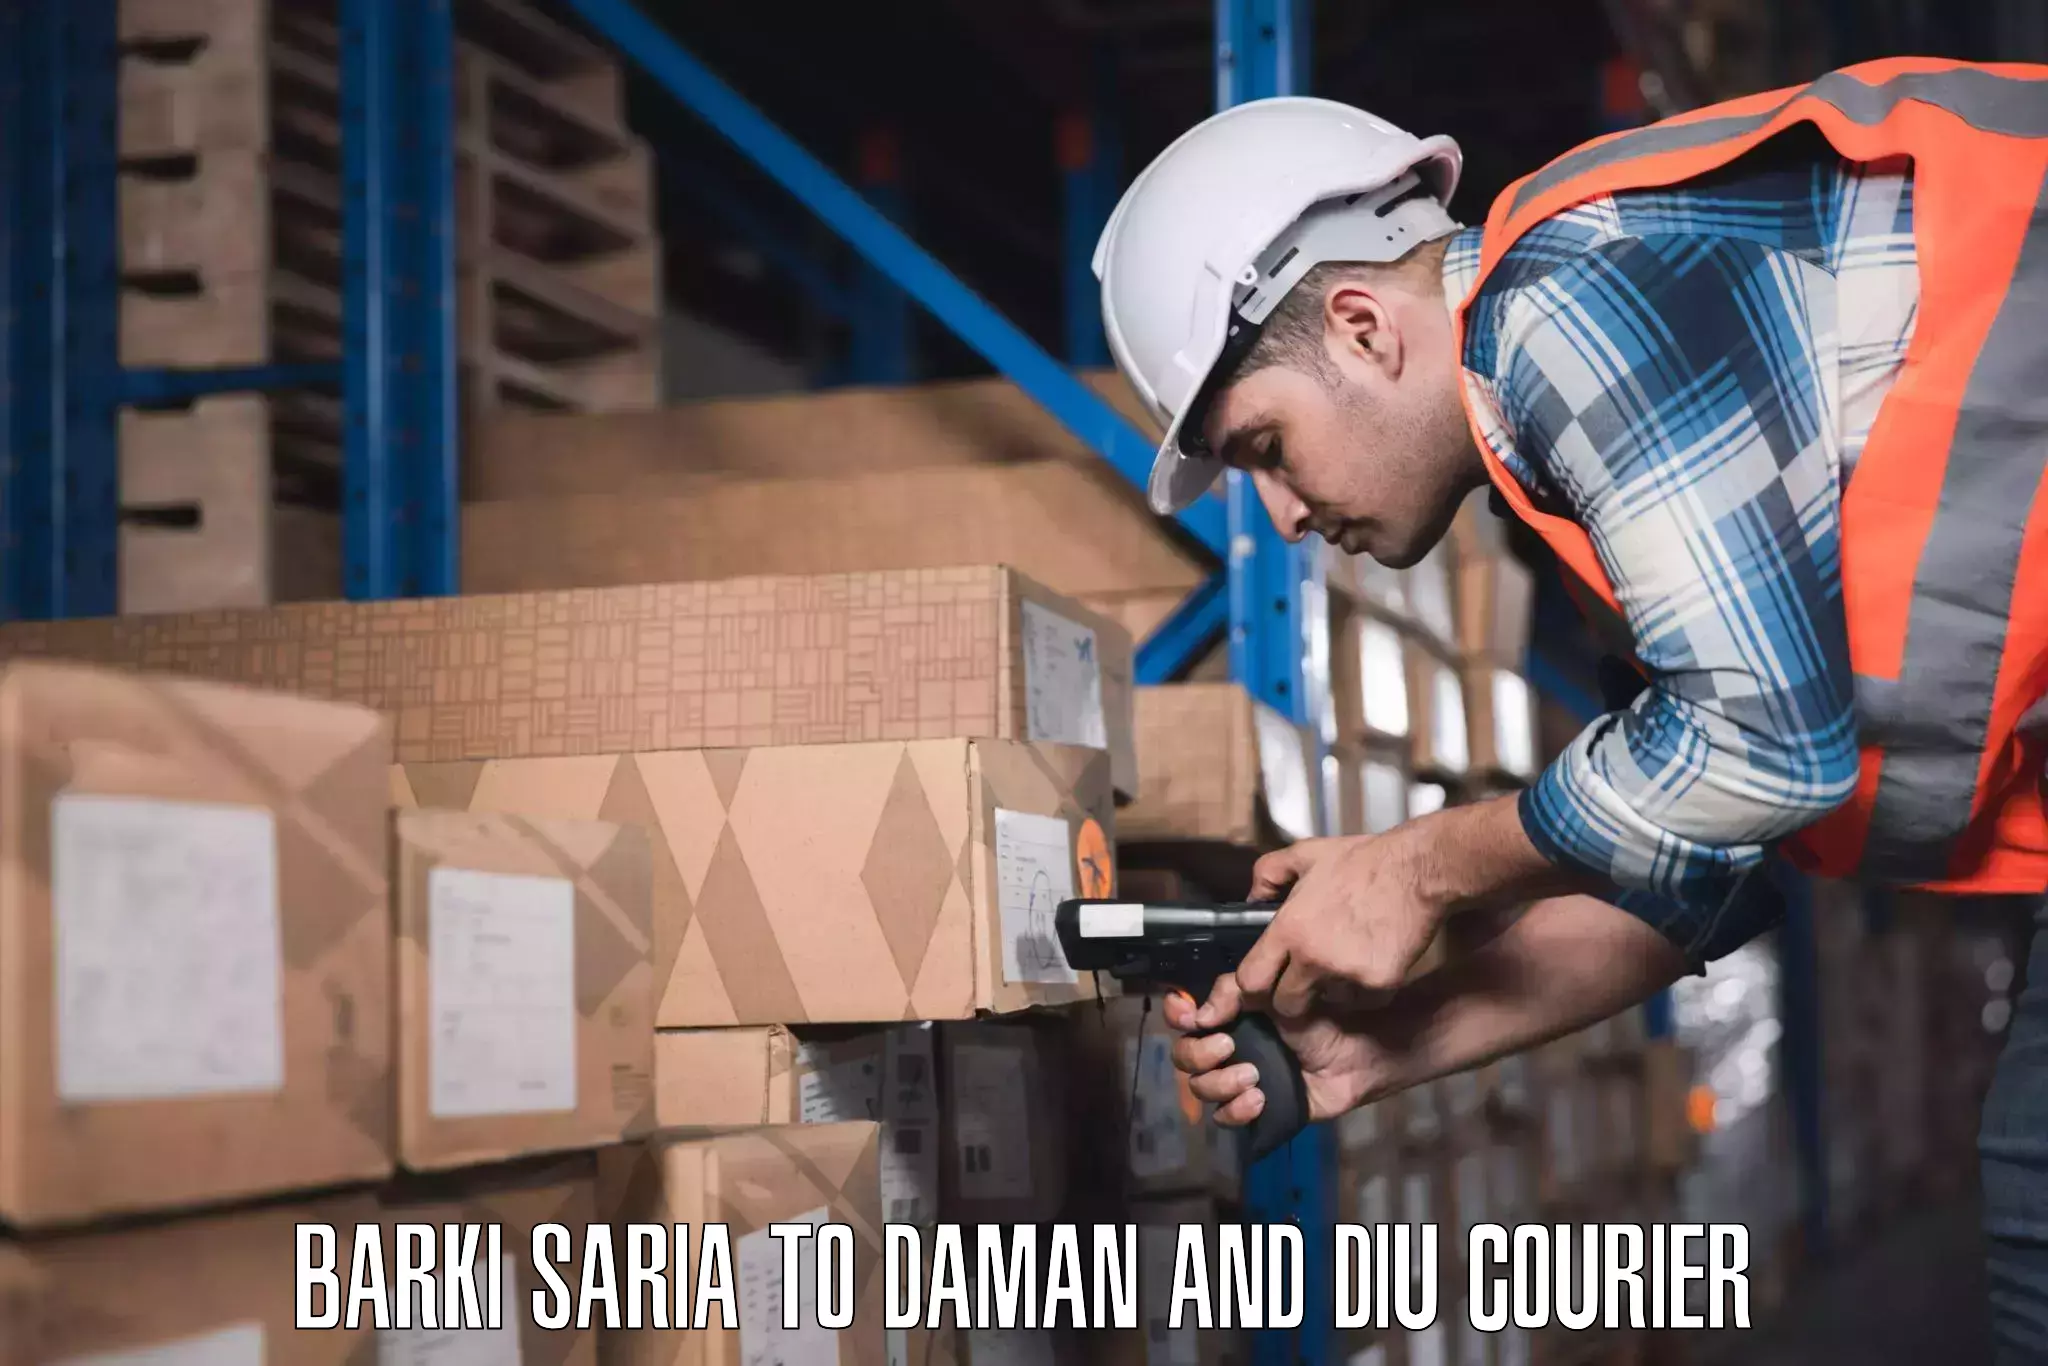 Outsize baggage transport Barki Saria to Daman